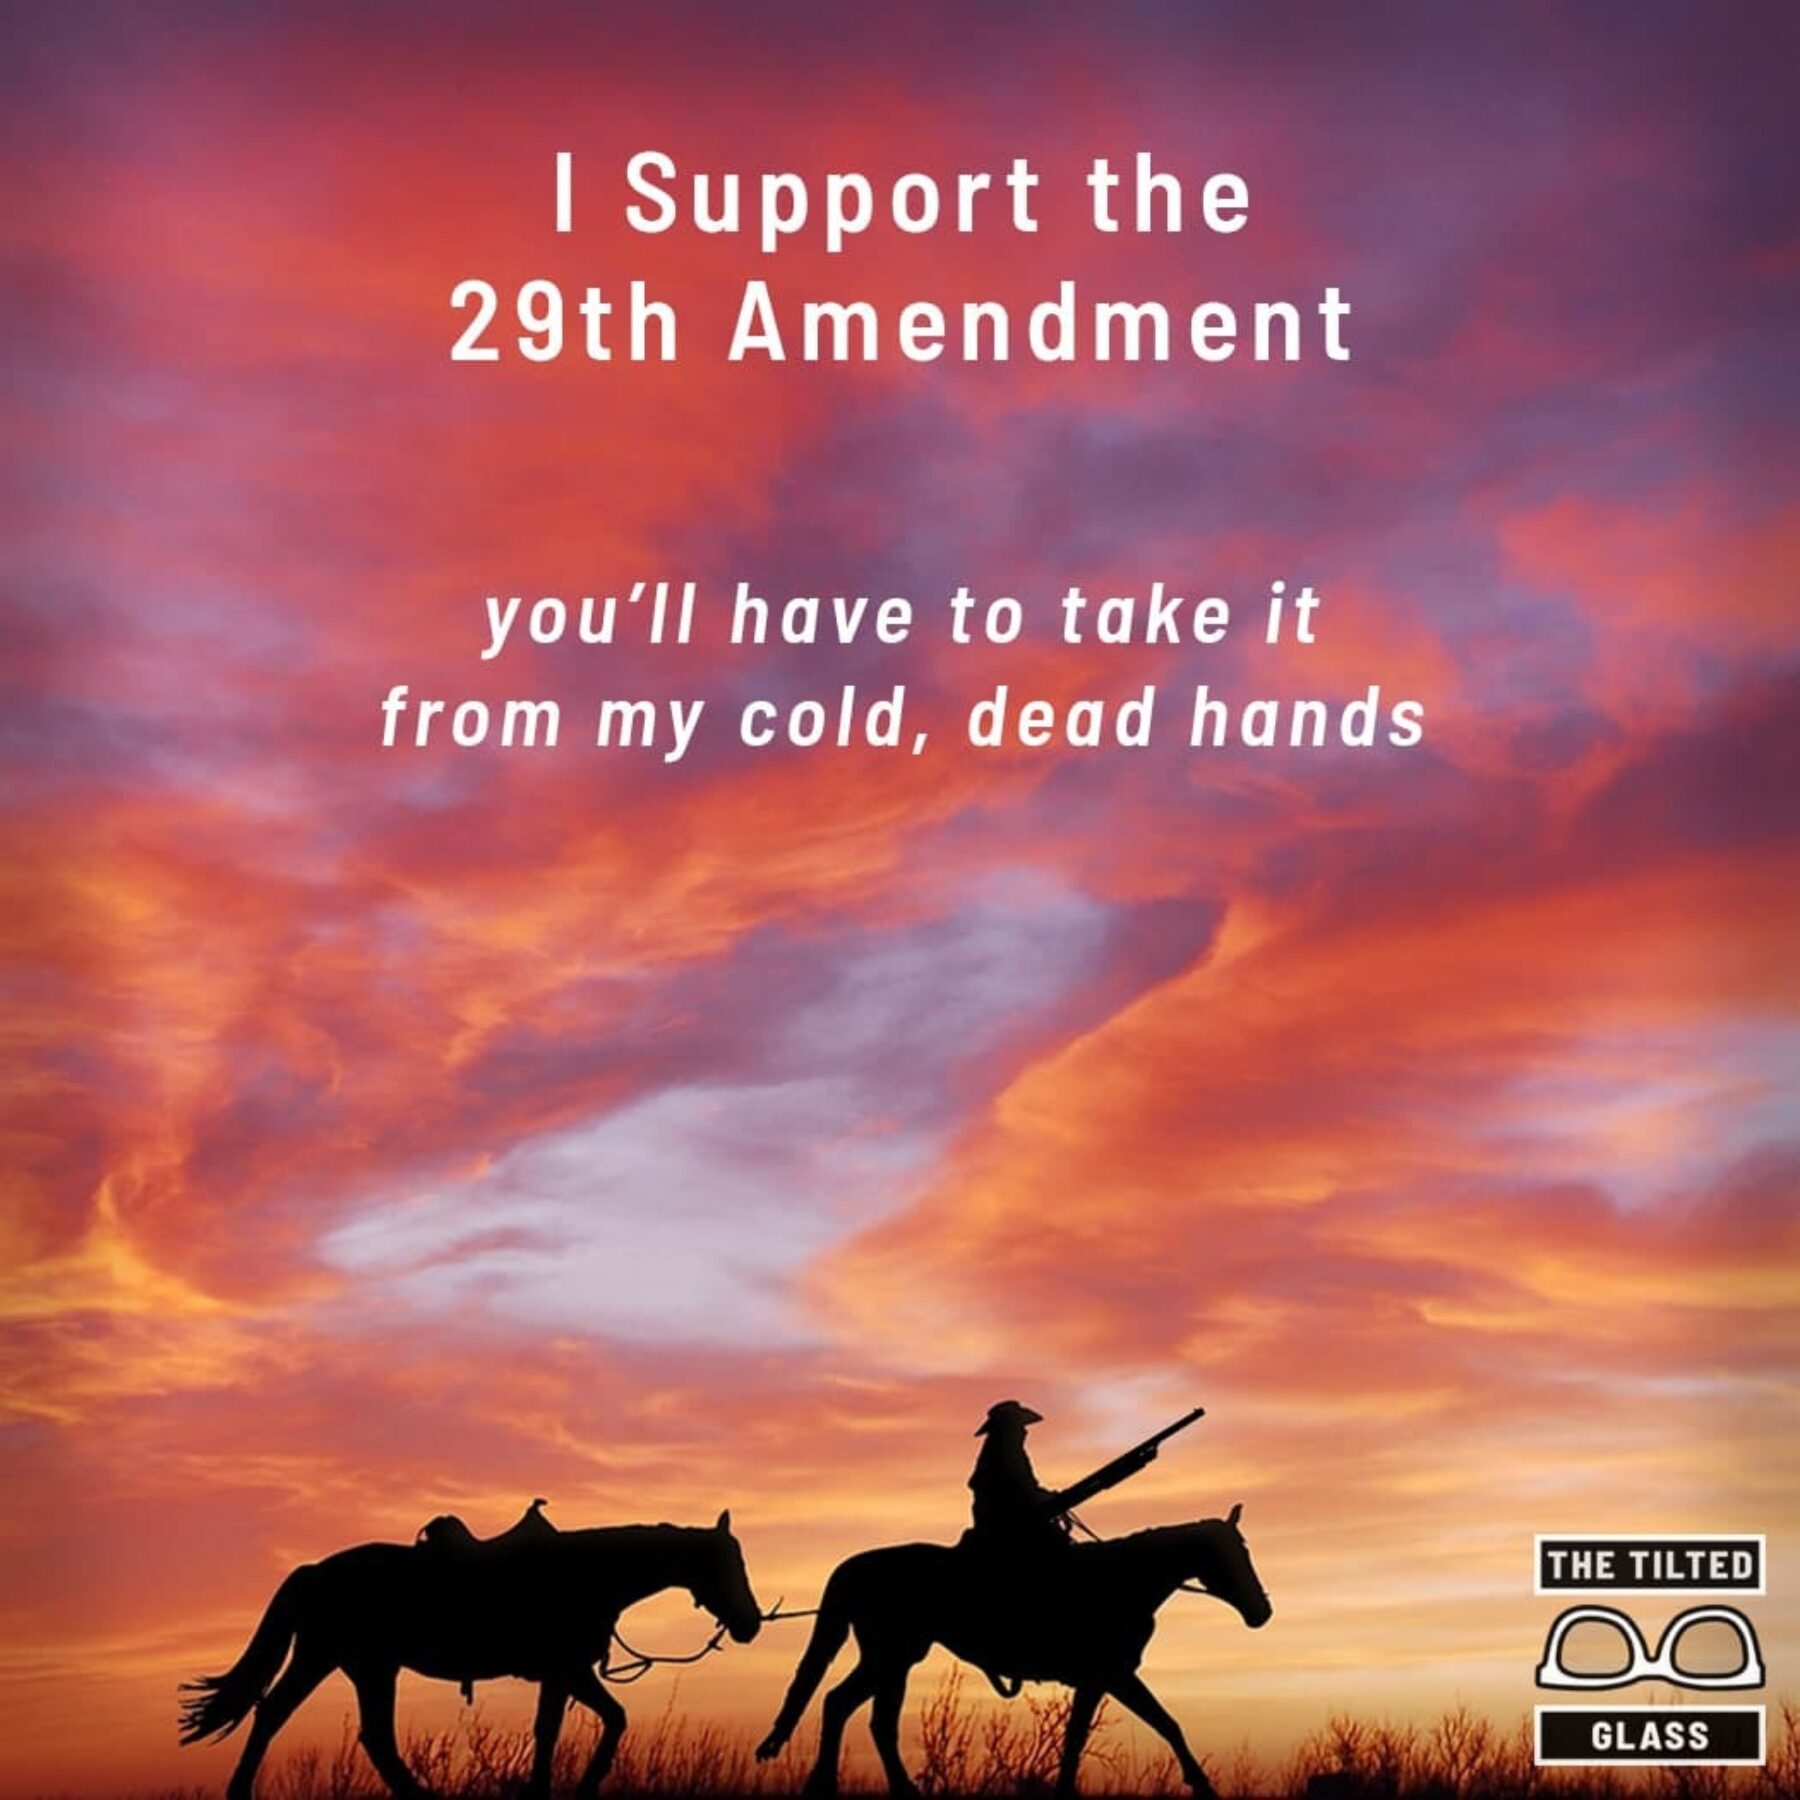 I Support the 29th Amendment